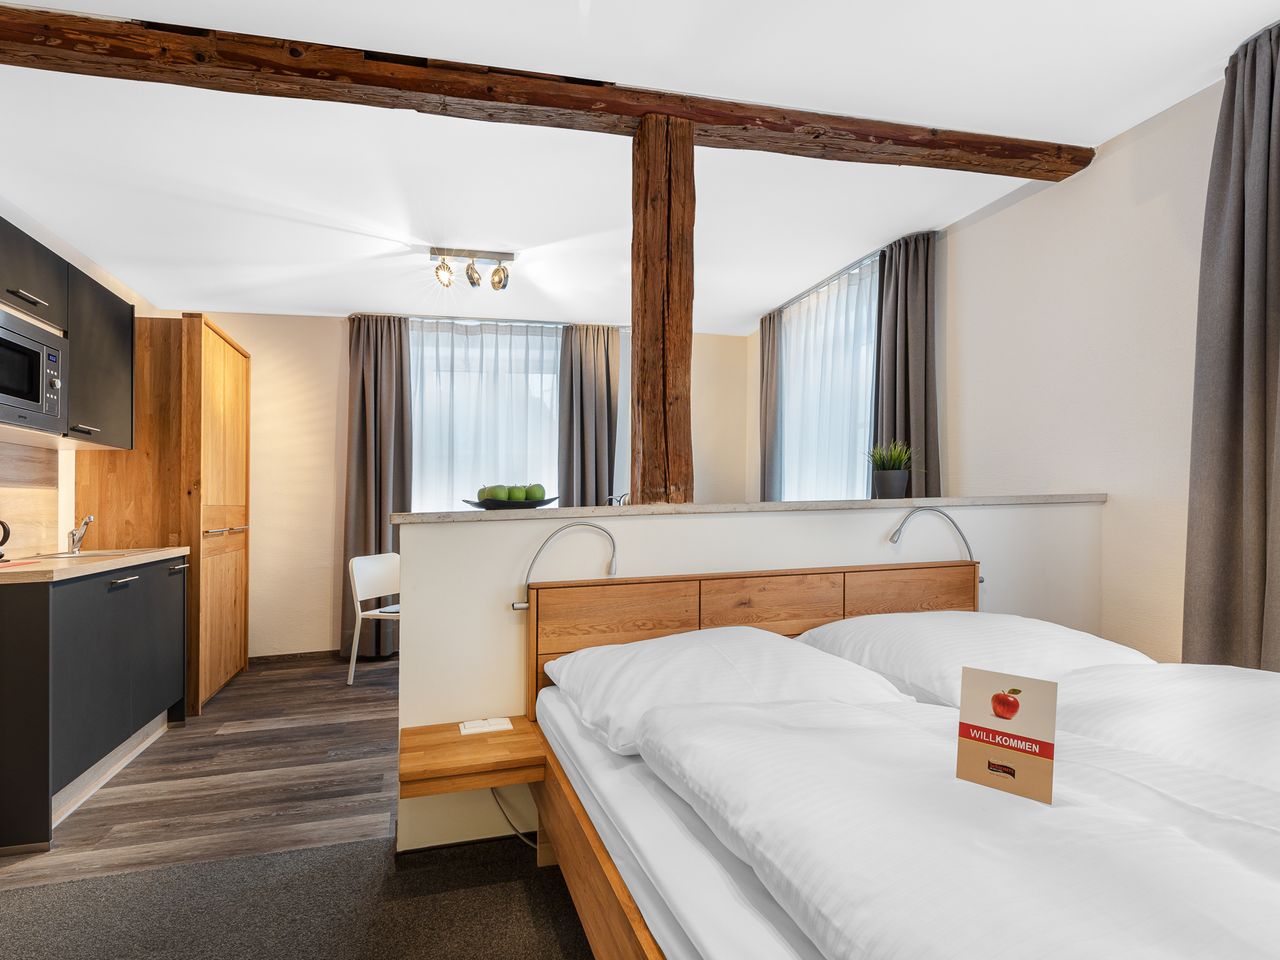 Altmühltal-Wandern: 3 Tage im Hotel mit Herz